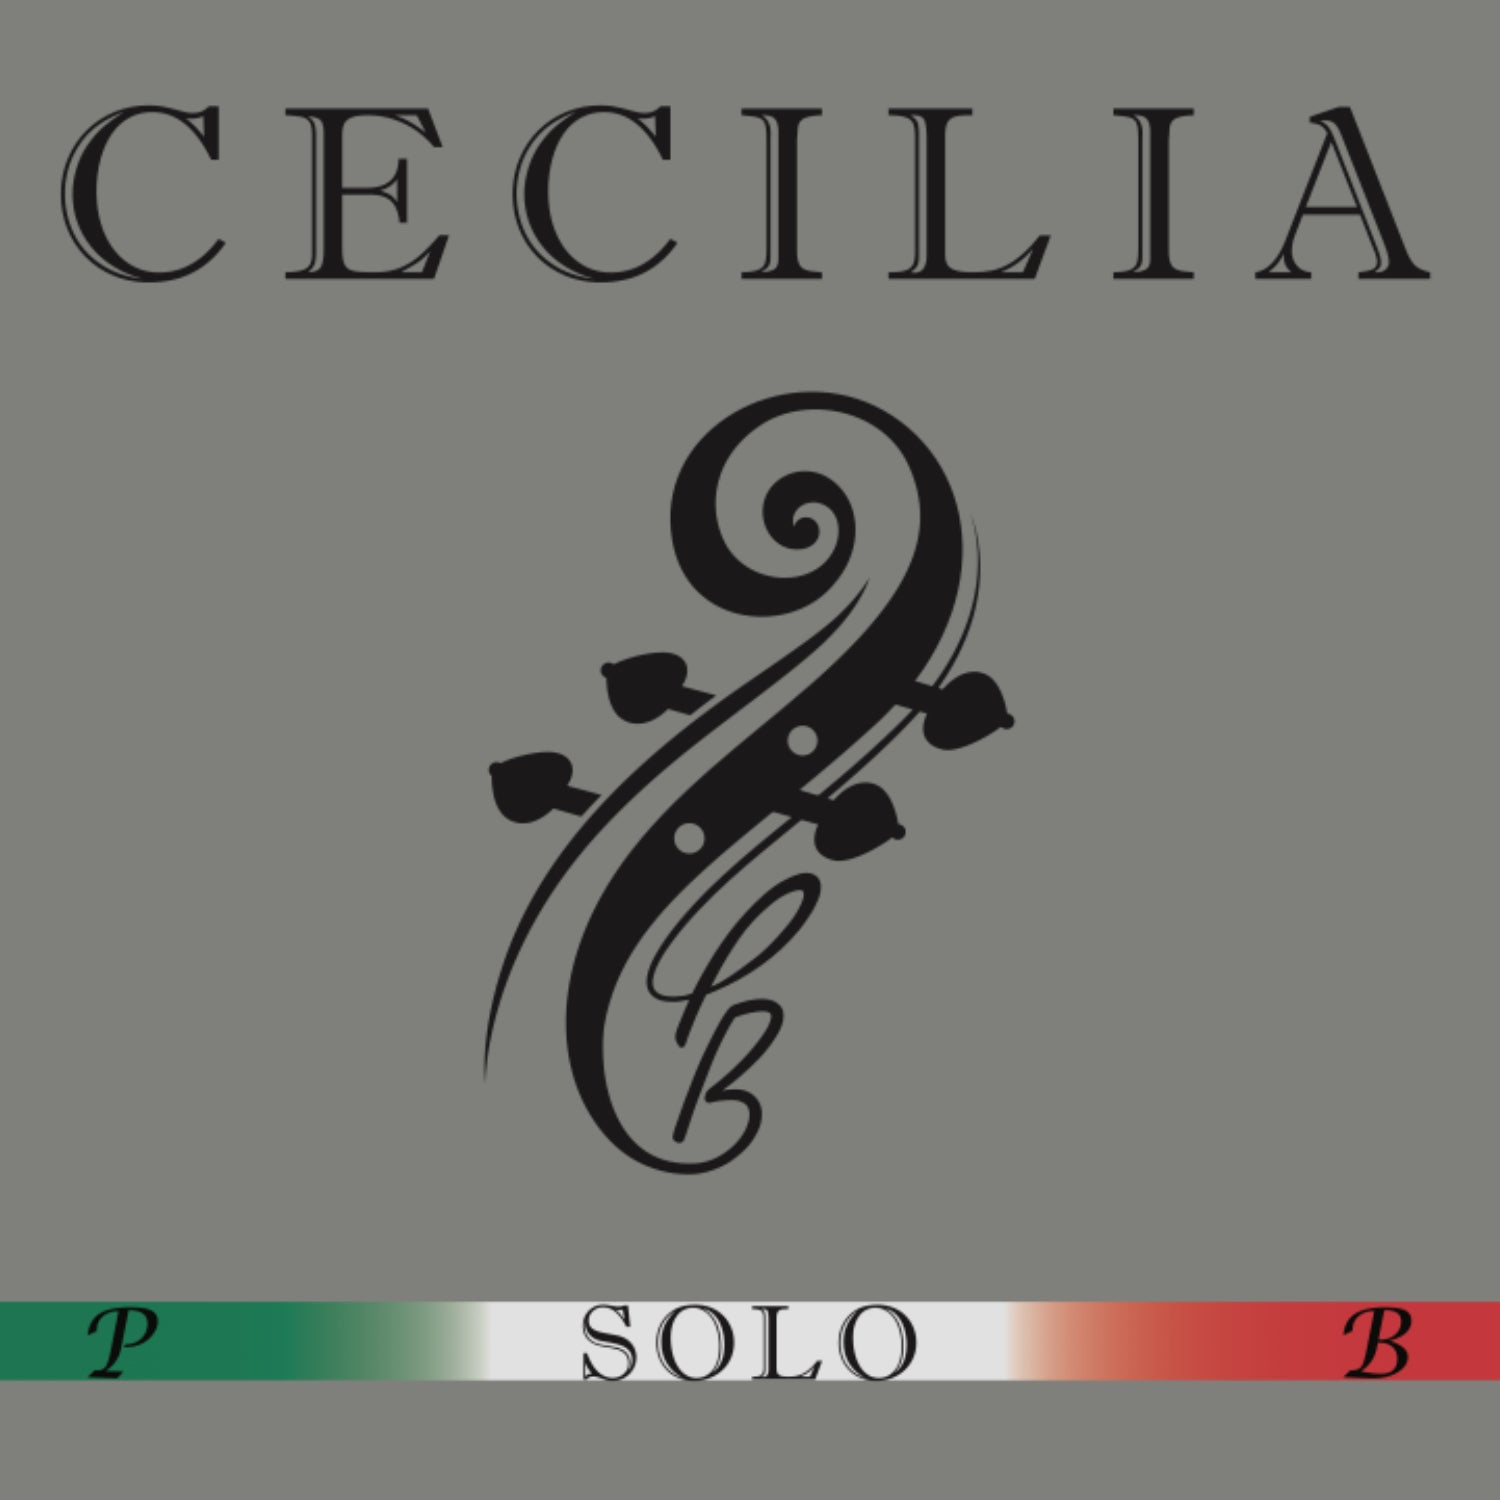 CECILIA SOLO Violin MINI